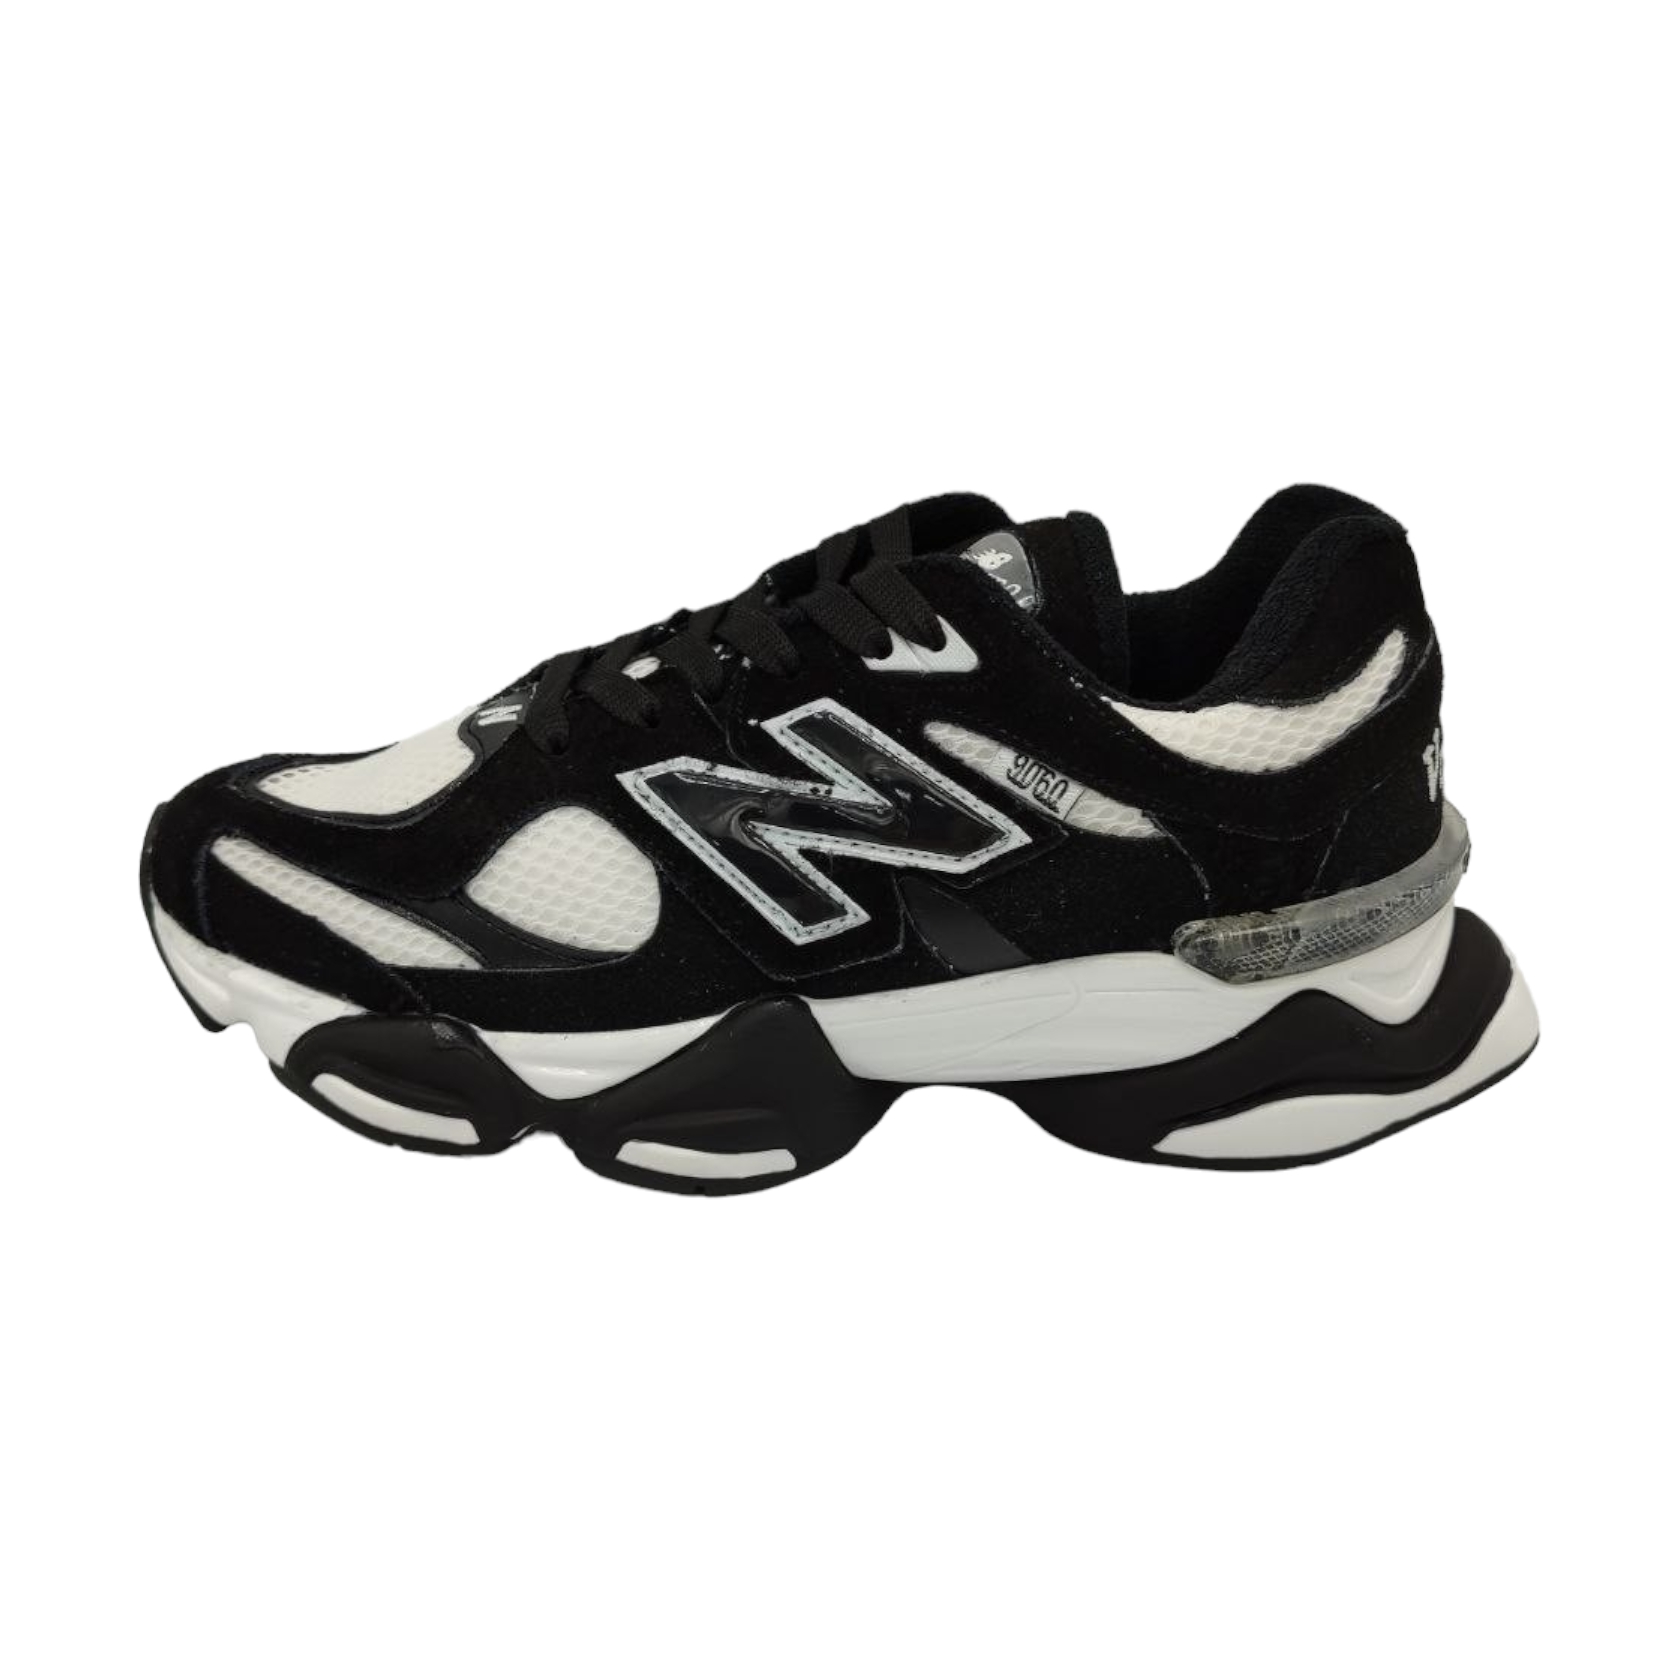 نکته خرید - قیمت روز کفش مخصوص دویدن مردانه مدل N.E.W 9060 کد 19940025565580 خرید